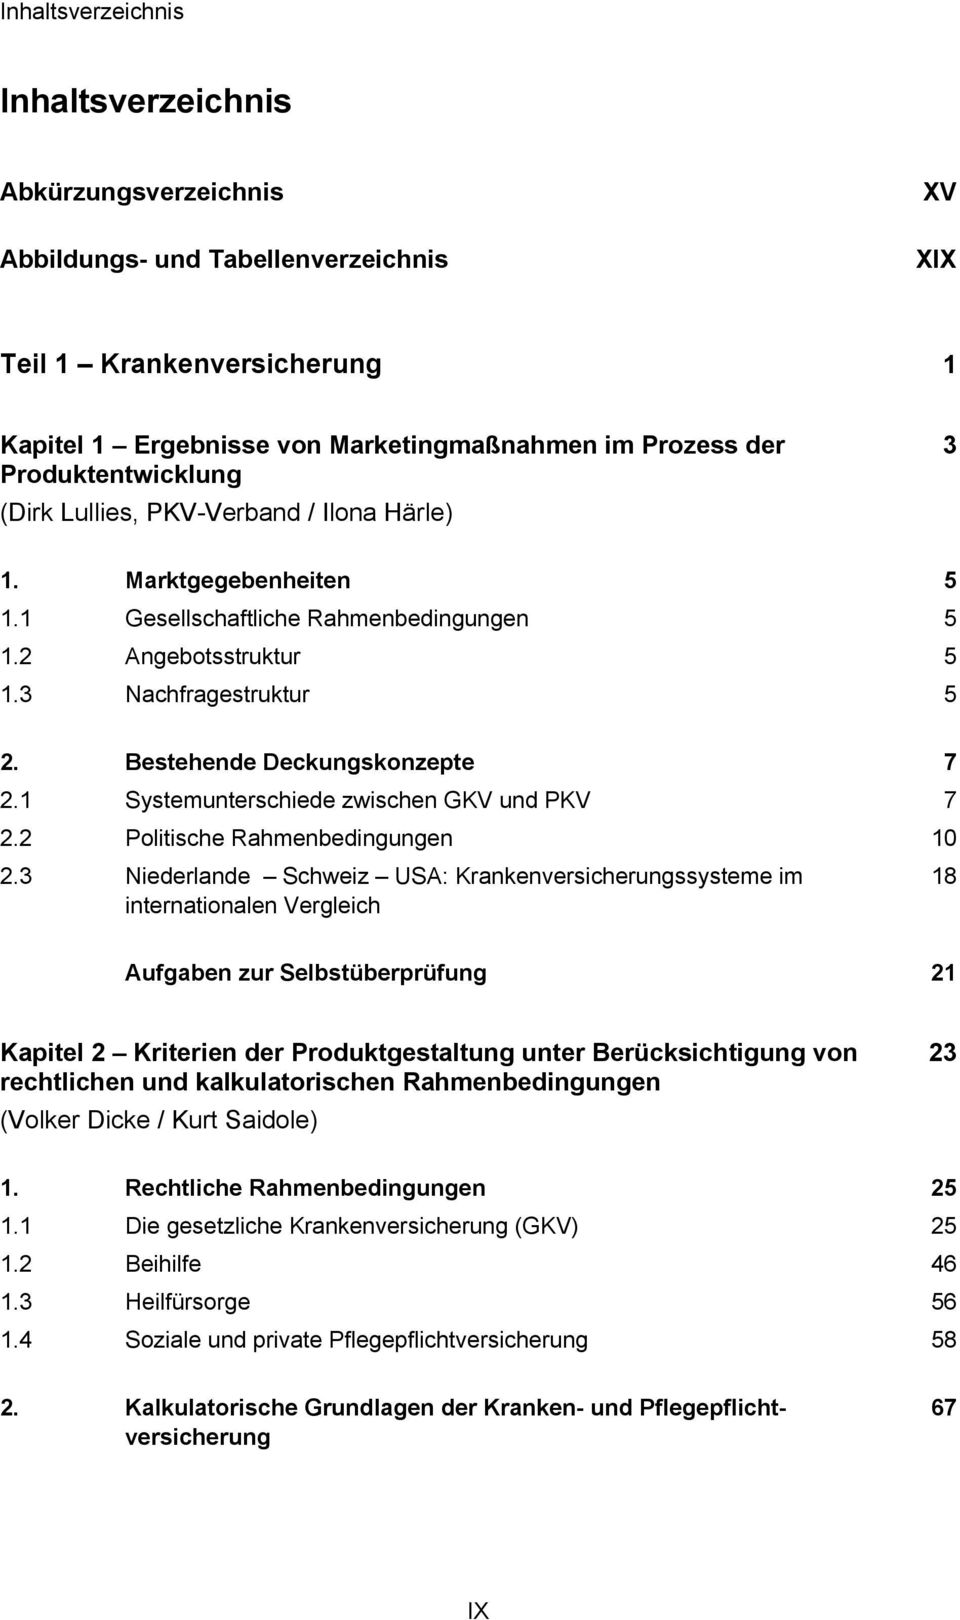 Bestehende Deckungskonzepte 7 Systemunterschiede zwischen GKV und PKV Politische Rahmenbedingungen Niederlande Schweiz USA: Krankenversicherungssysteme im internationalen Vergleich 7 10 18 Aufgaben